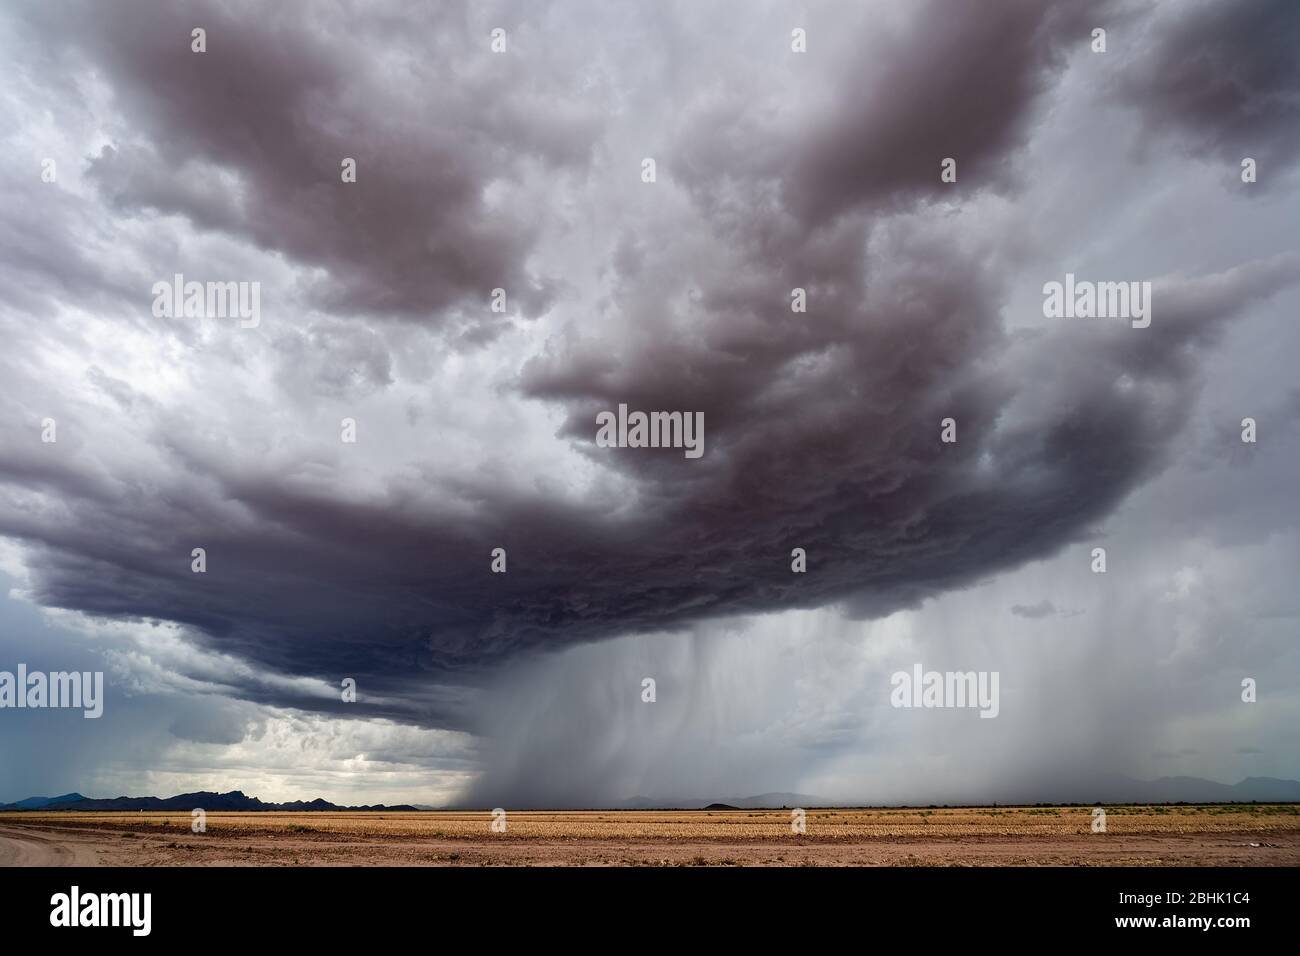 Während der Sommermonsunsaison in der Nähe von Chuichu, Arizona, fallen in der Wüste Sturmwolken mit starken Regenfällen Stockfoto